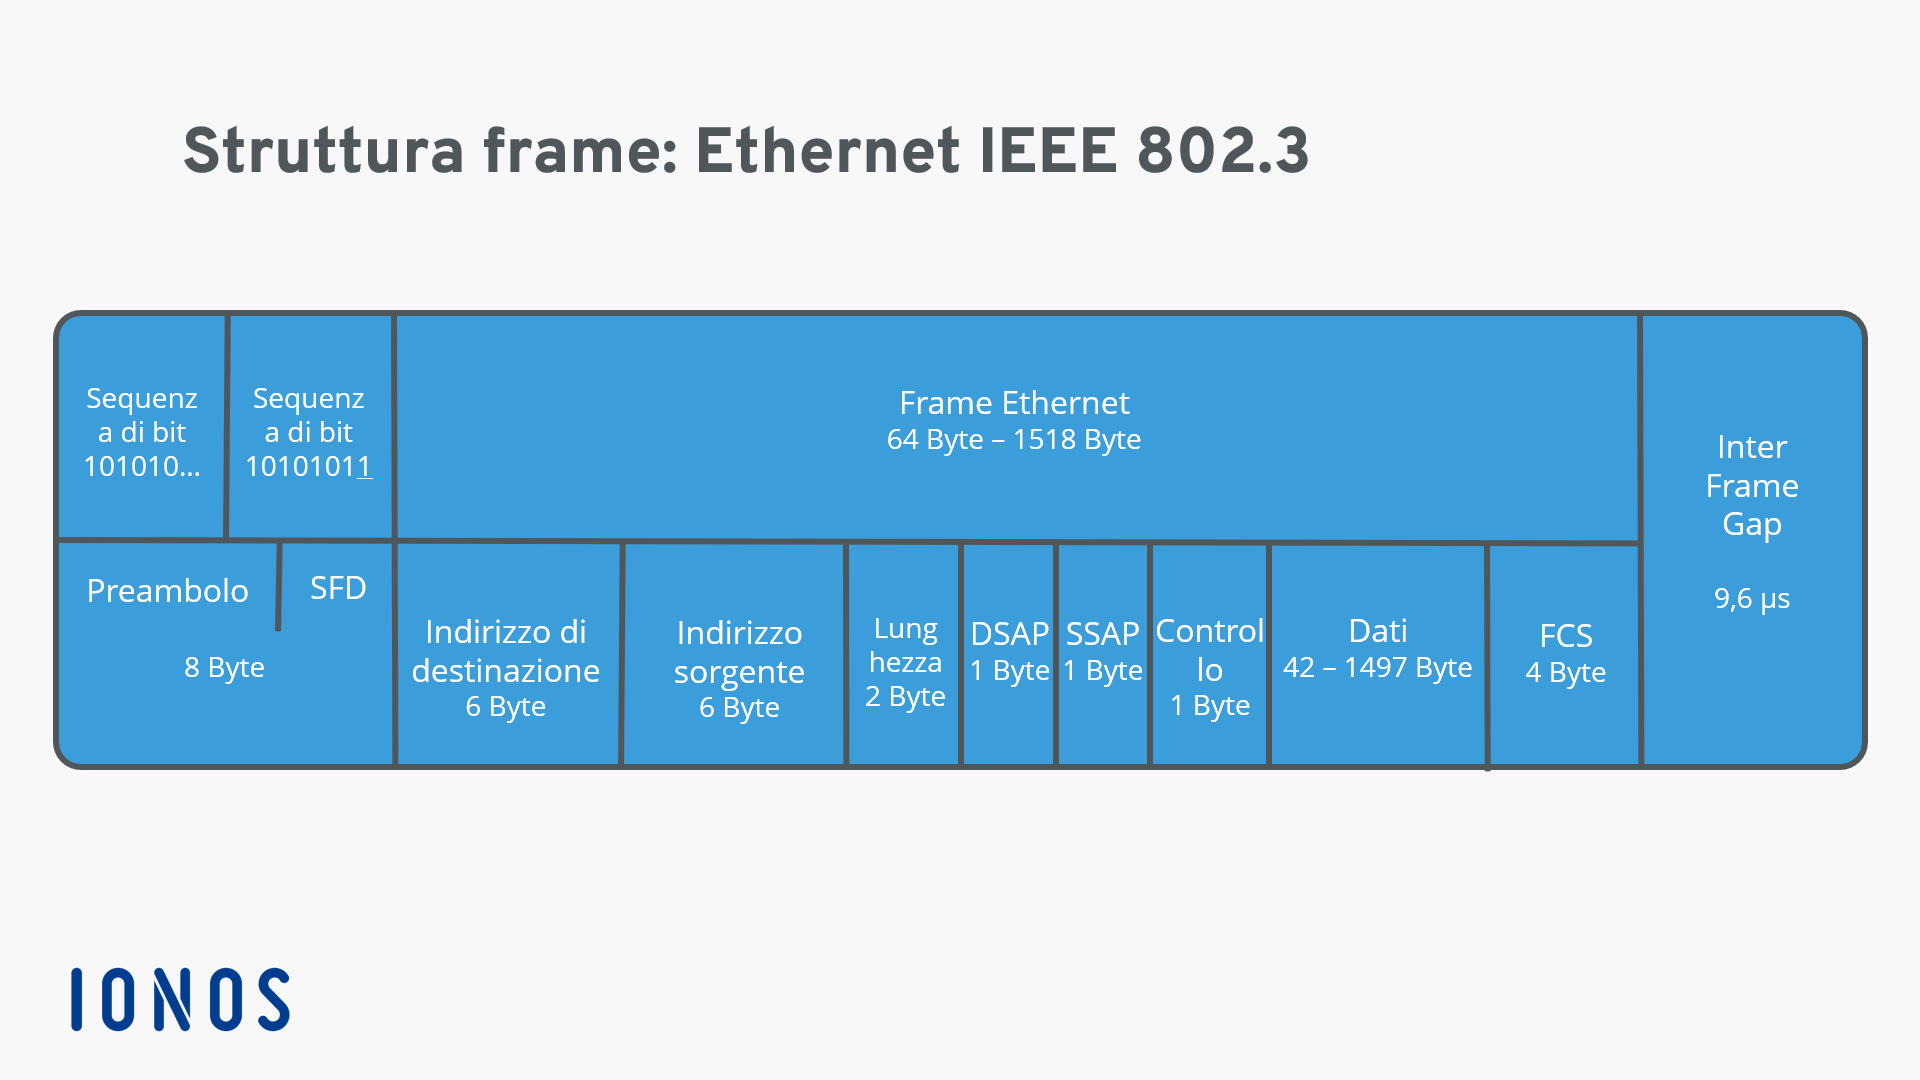 Rappresentazione di una struttura frame Ethernet 802.3